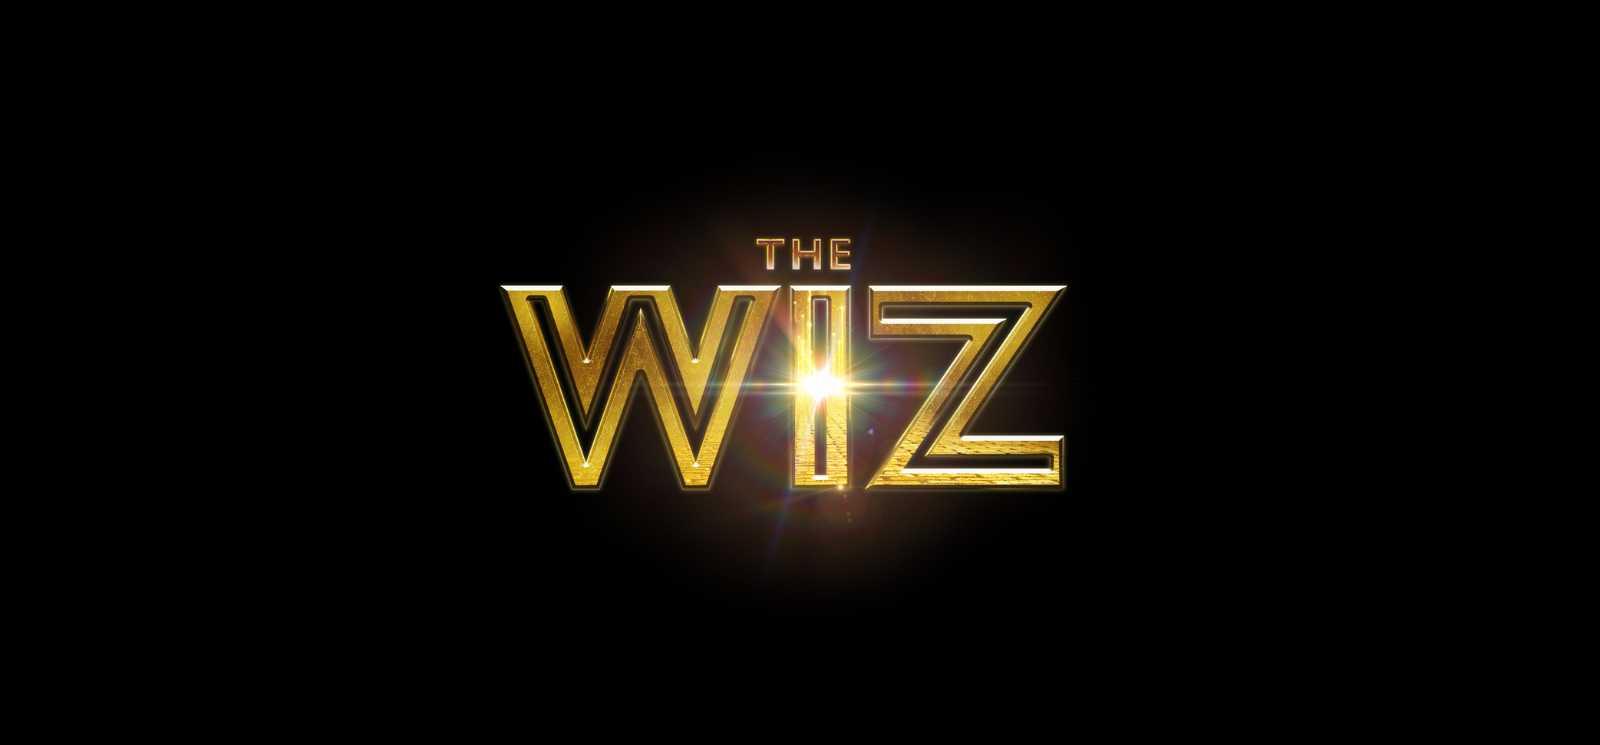 THE WIZ